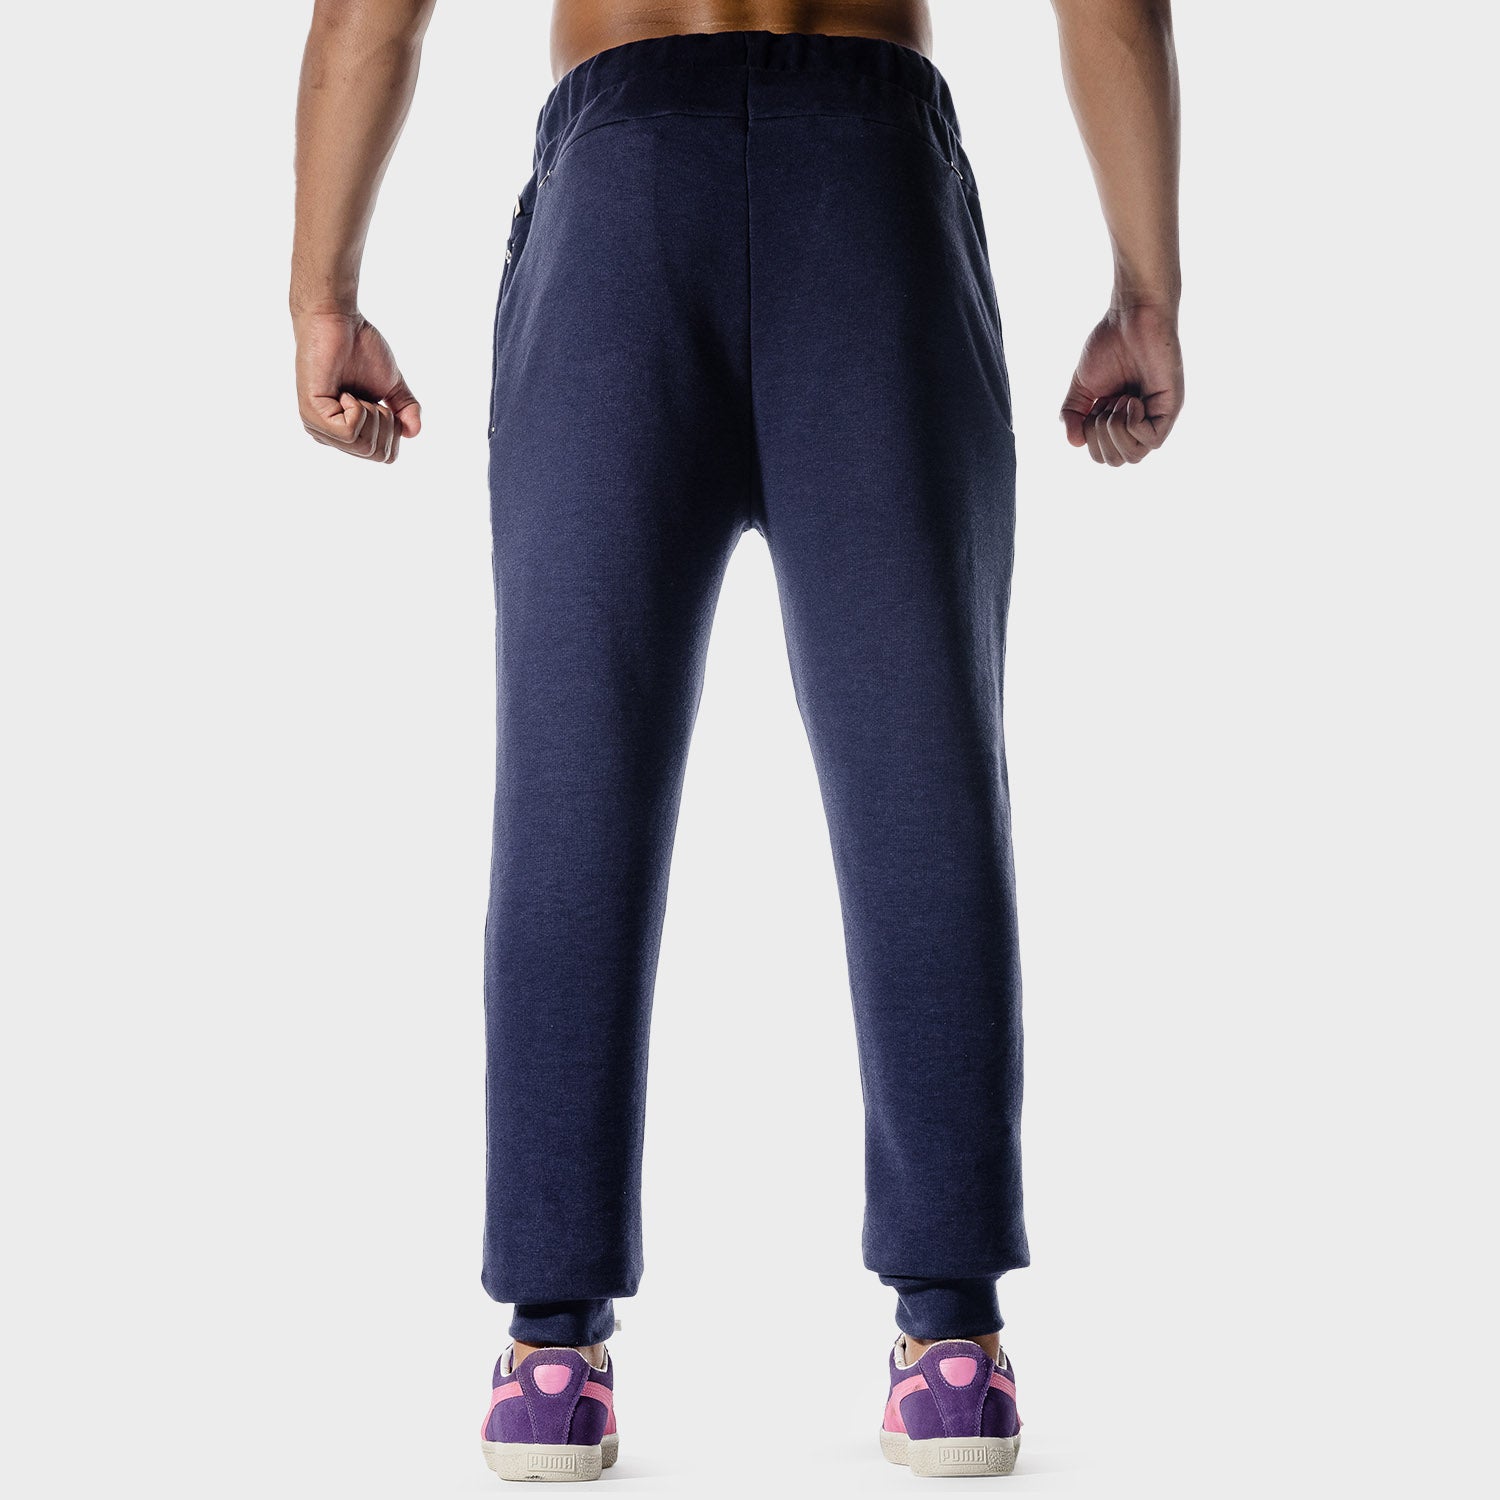 squatwolf-gym-pants-golden-era-joggers-patriot-blue-workout-clothes-for-men